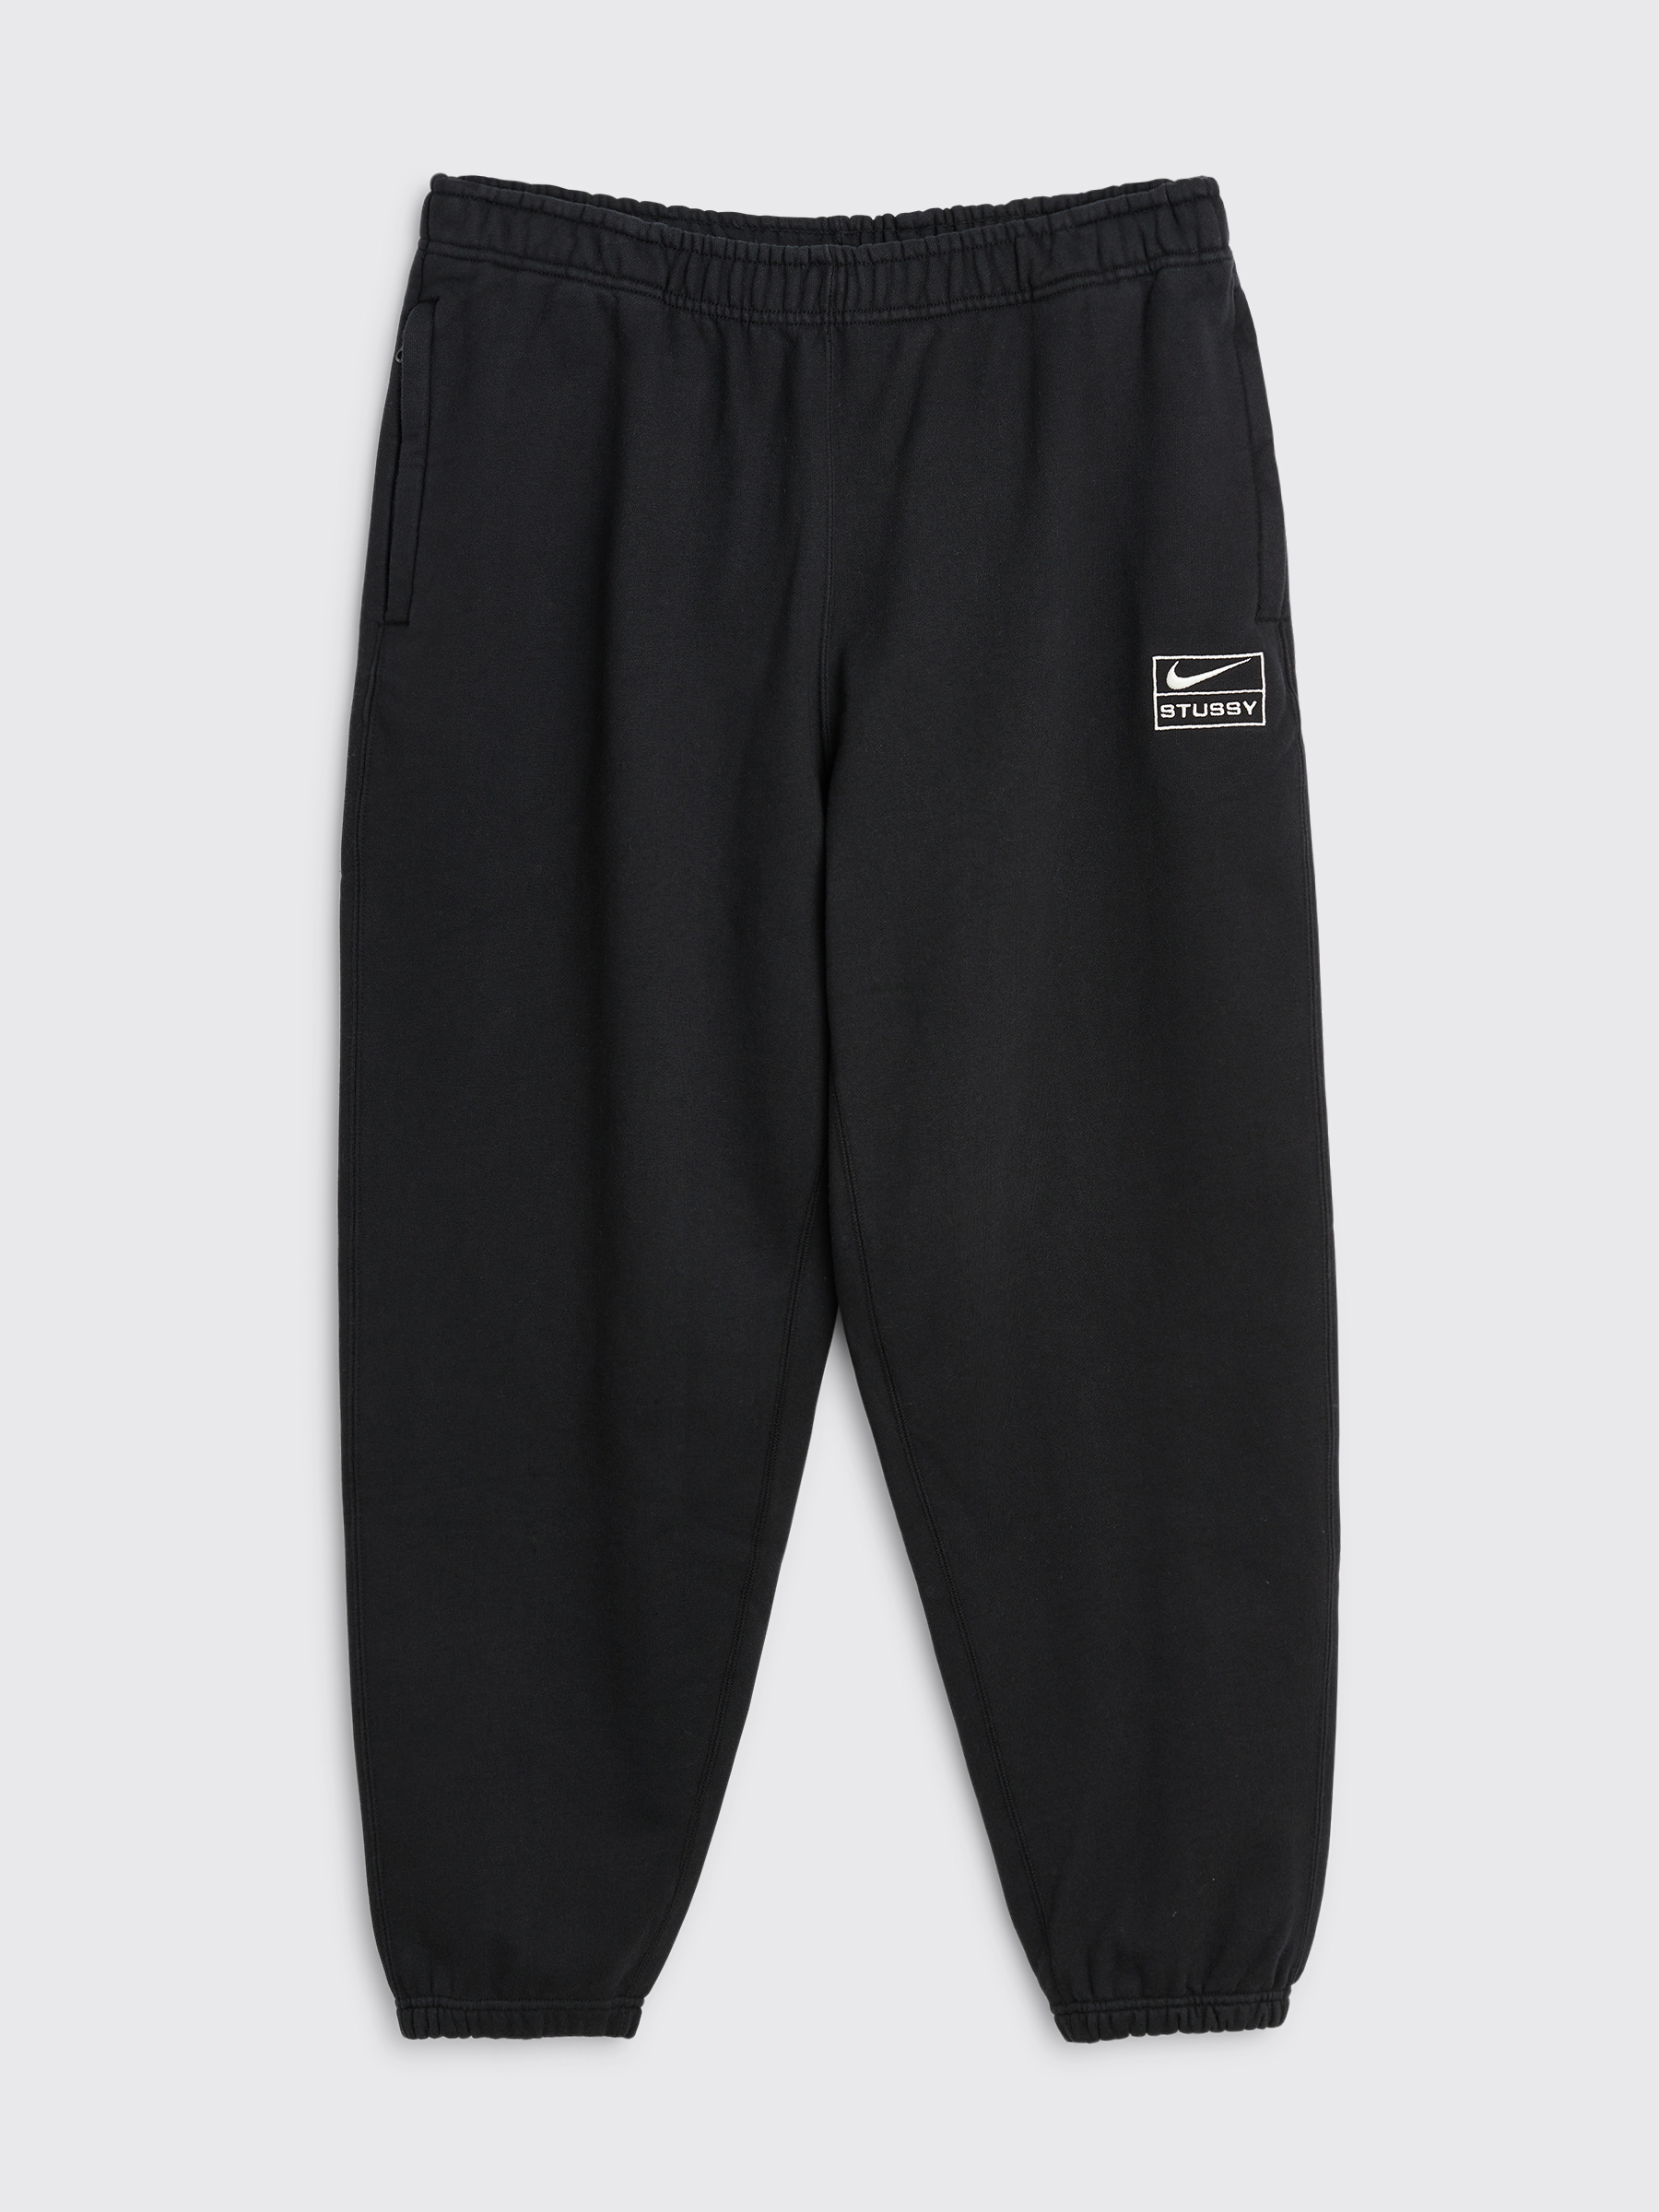 Nike Sportswear Tech Fleece Pants  Pants  Stirling Sports